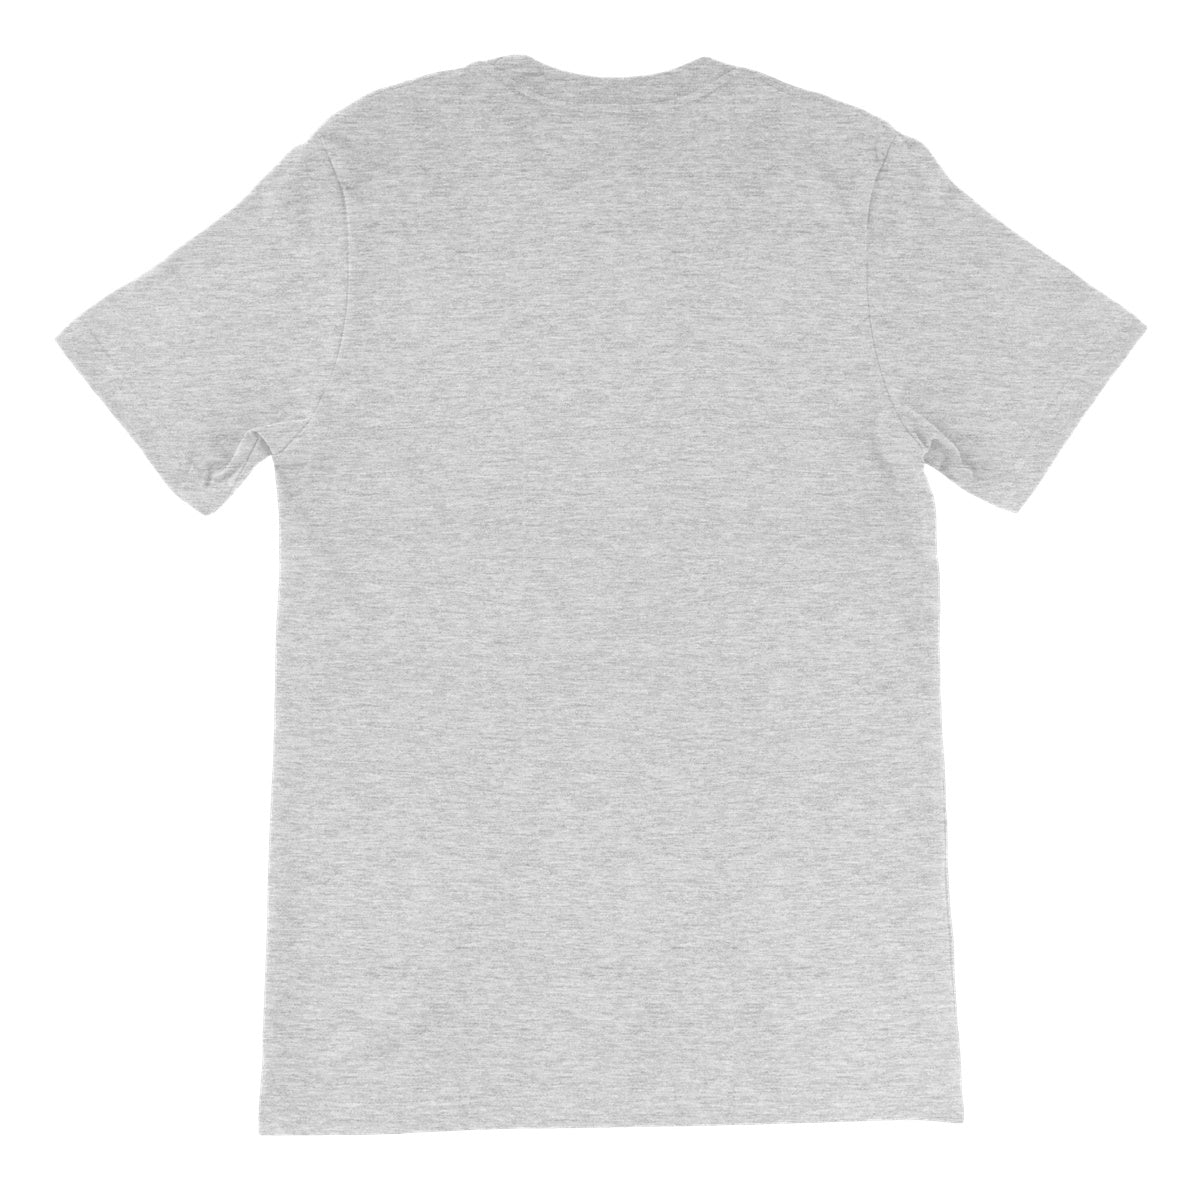 AQUA - 02 - Aquaticus Spirit - Camiseta Unissex Fine Jersey